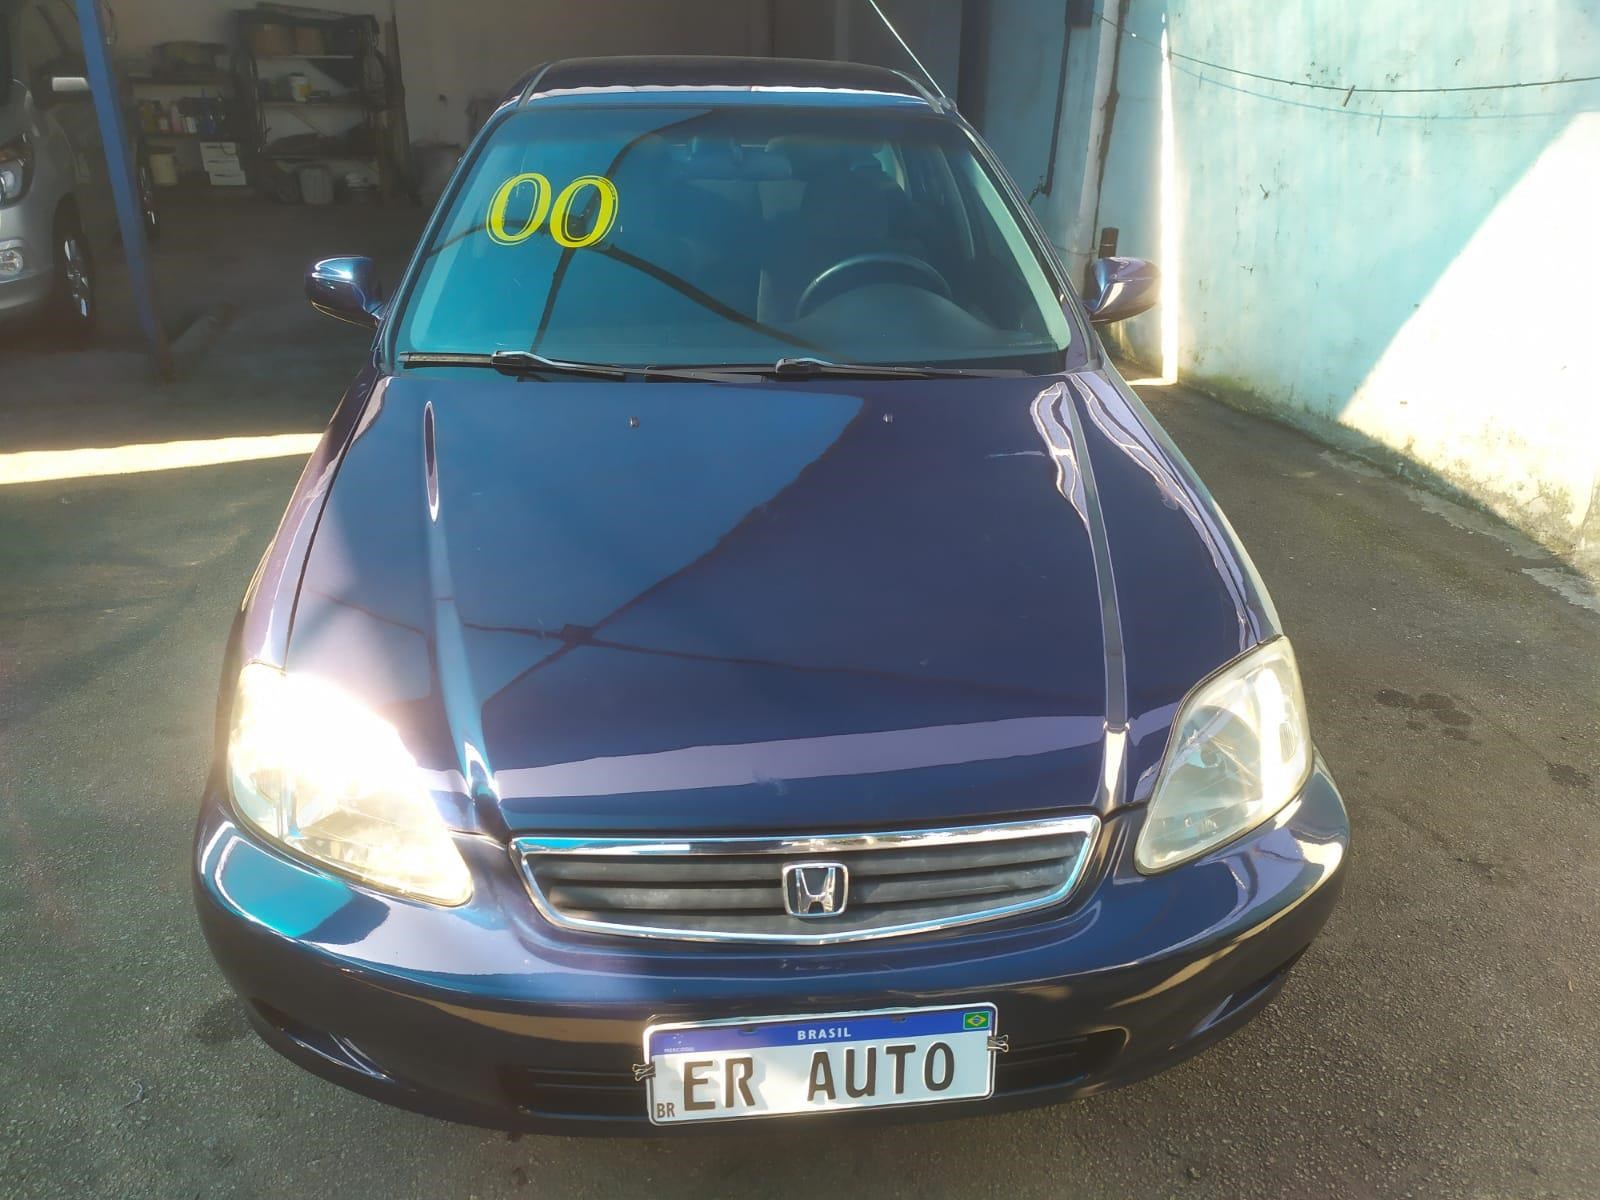 //www.autoline.com.br/carro/honda/civic-16-lx-16v-gasolina-4p-automatico/2000/sao-paulo-sp/17386603